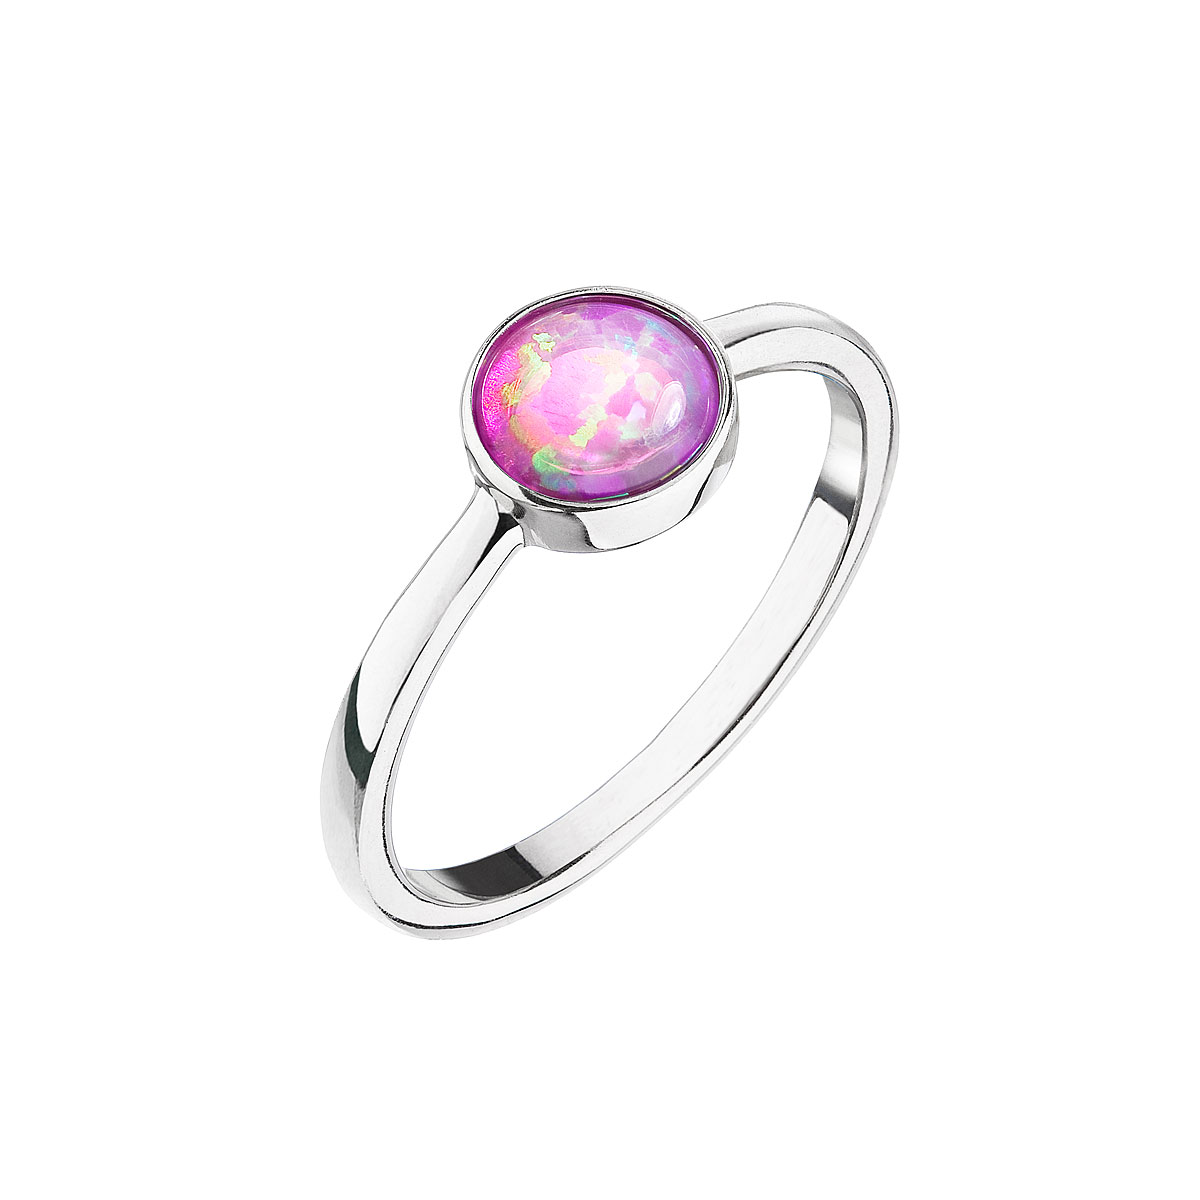 Prstene - Evolution Group Strieborný prsteň s ružovým opálom 15001.3 pink 52 mm